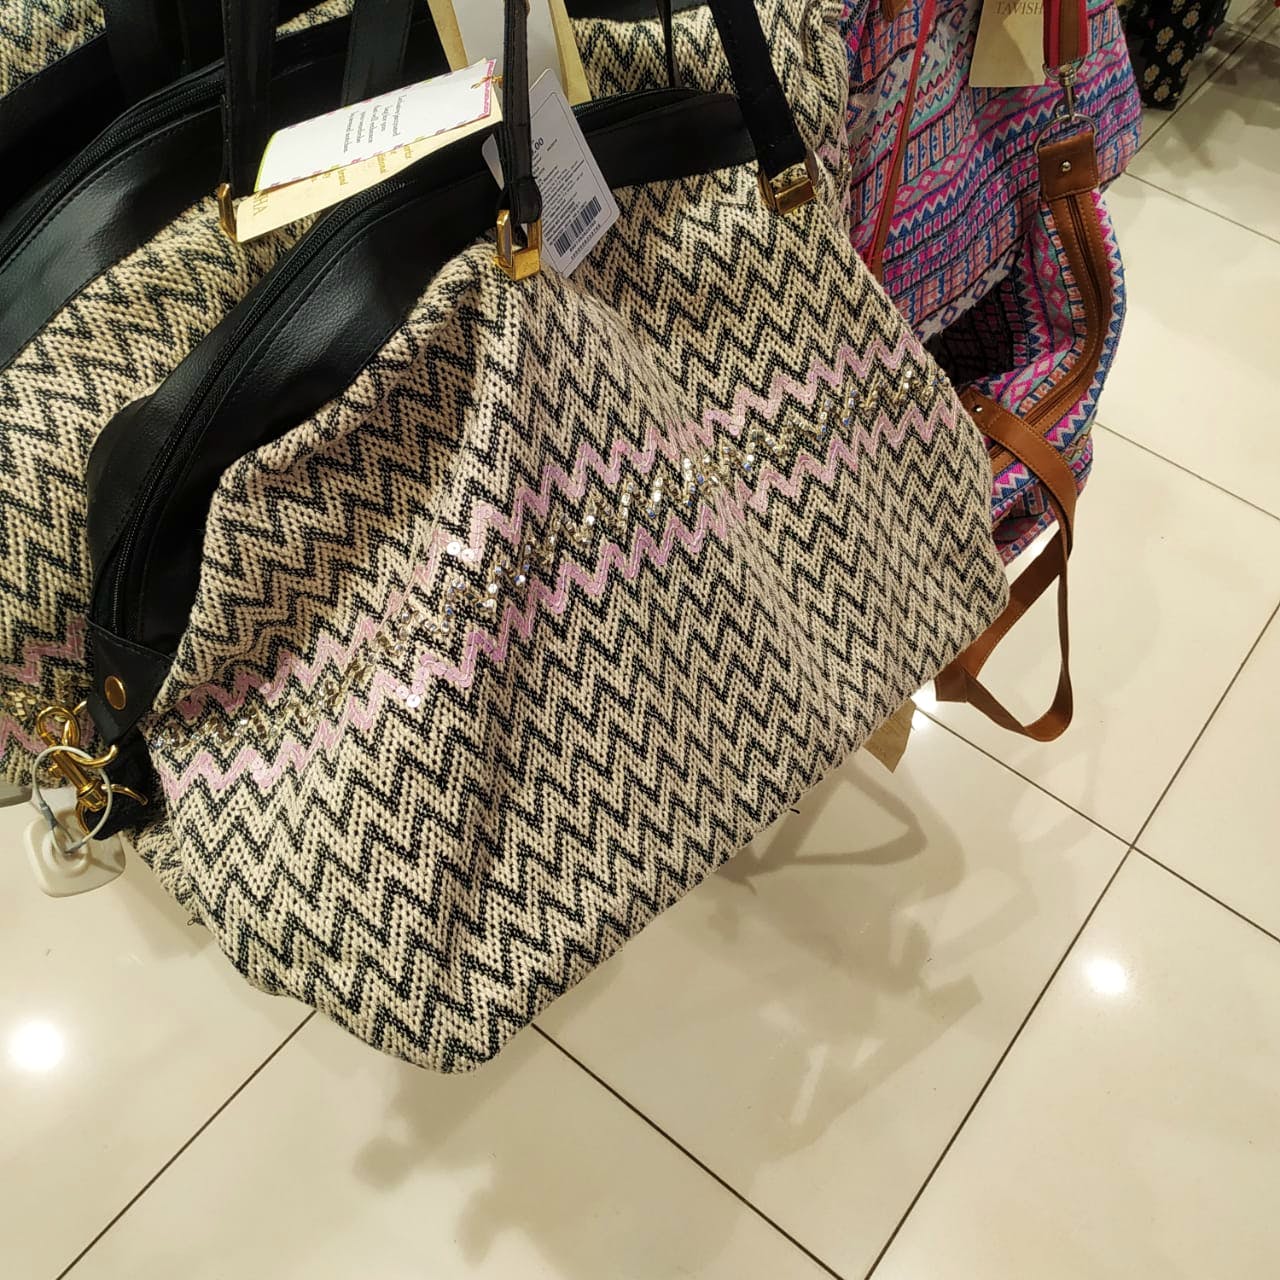 Functional Shoulder Bag Multiple Pockets Handbag for Women,Brown -  Walmart.com